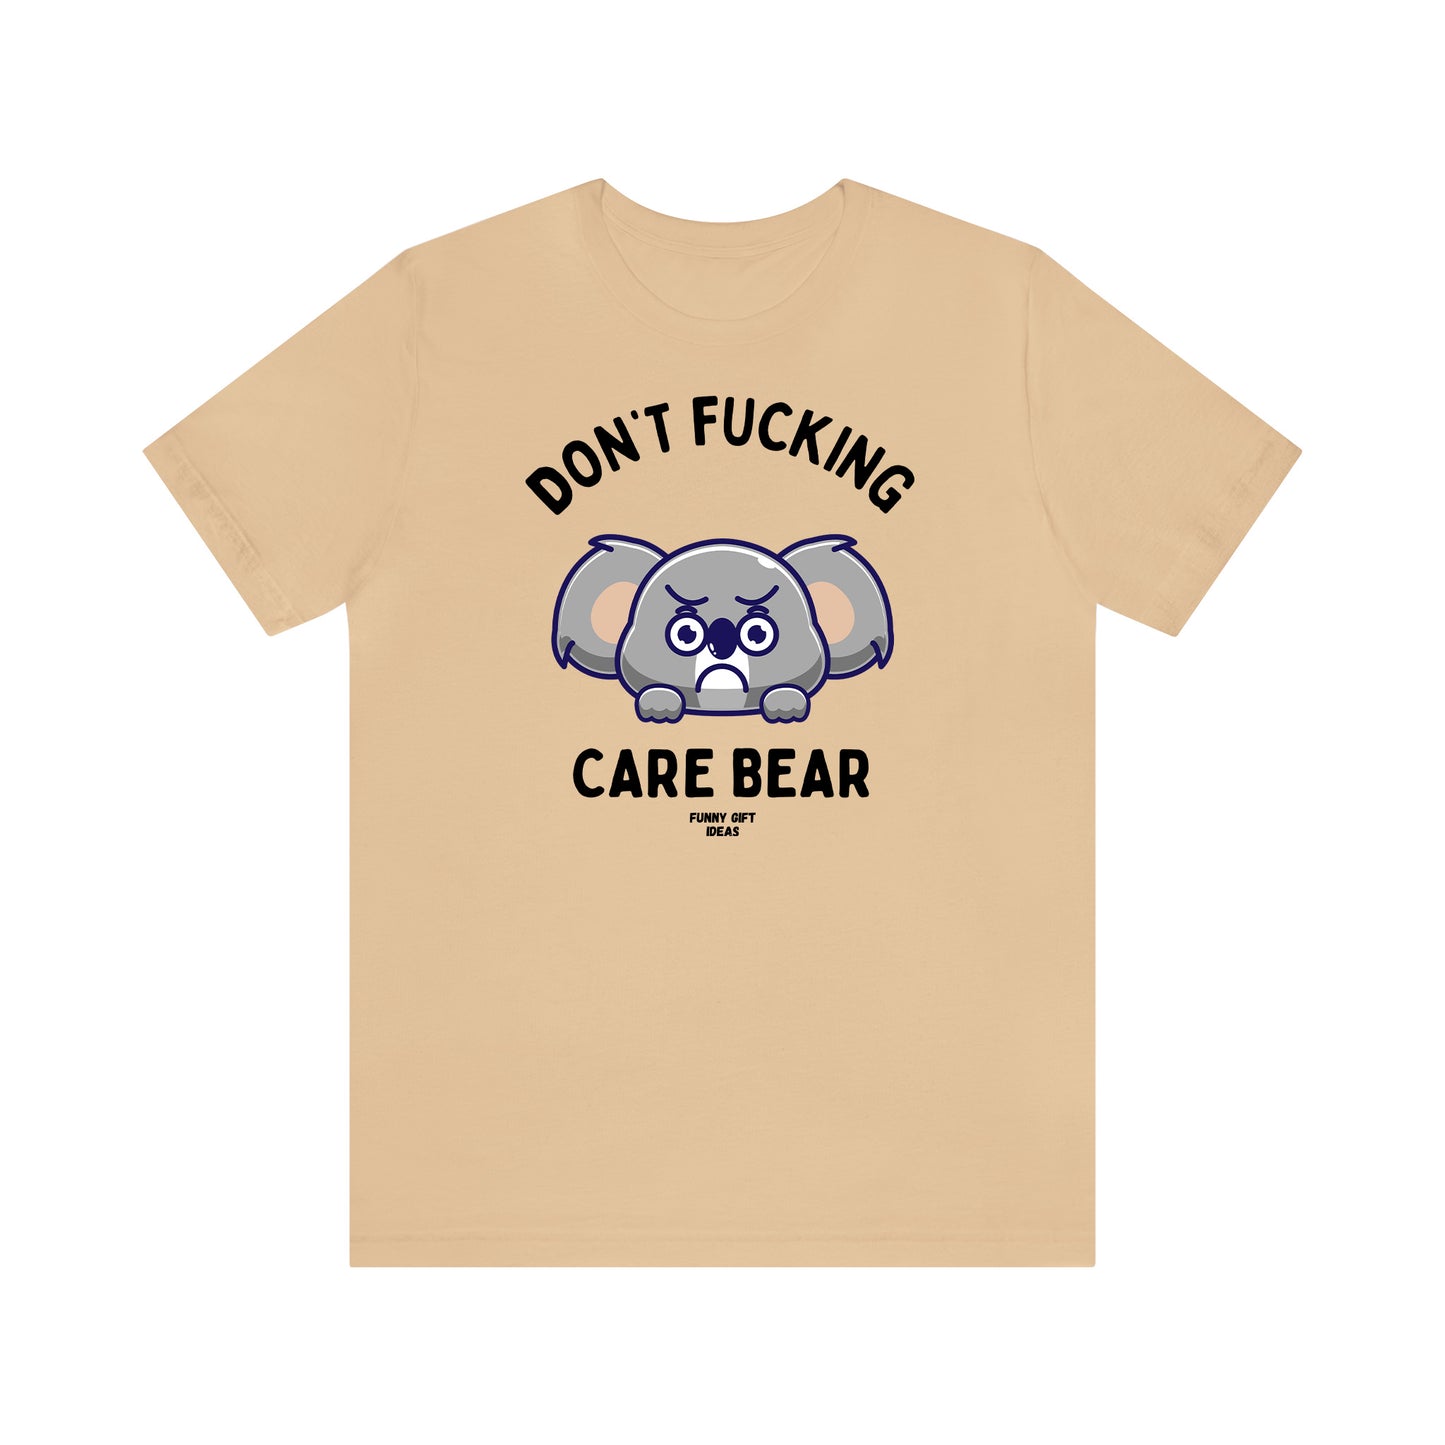 Funny Shirts for Women - Don't Fucking Care Bear - Women's T Shirts